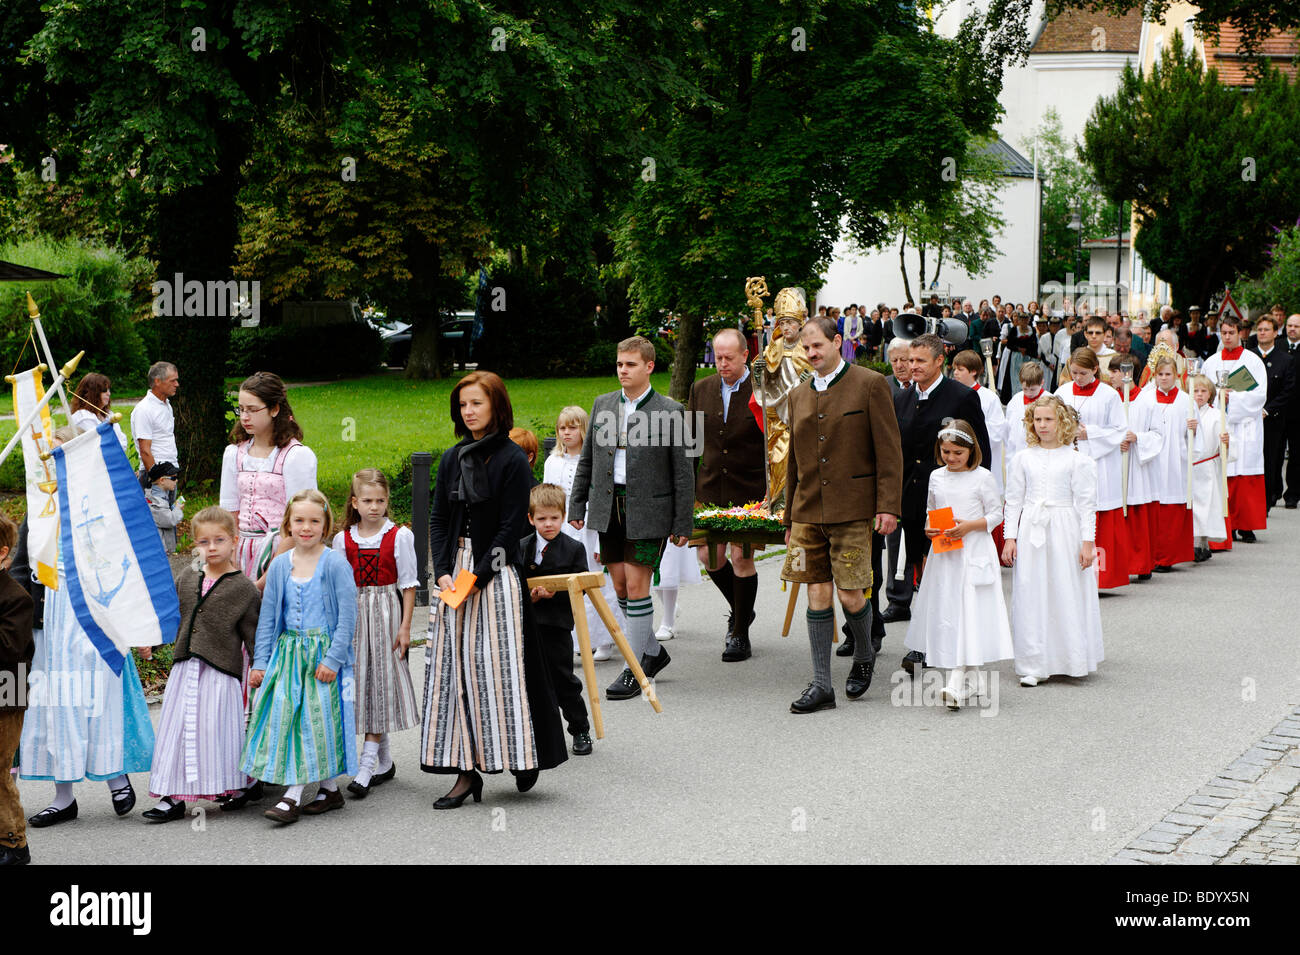 Kiliansfest, Festival of St. Kilian, Bad Heilbrunn, Loisachtal, Toelz region, Upper Bavaria, Germany, Europe Stock Photo